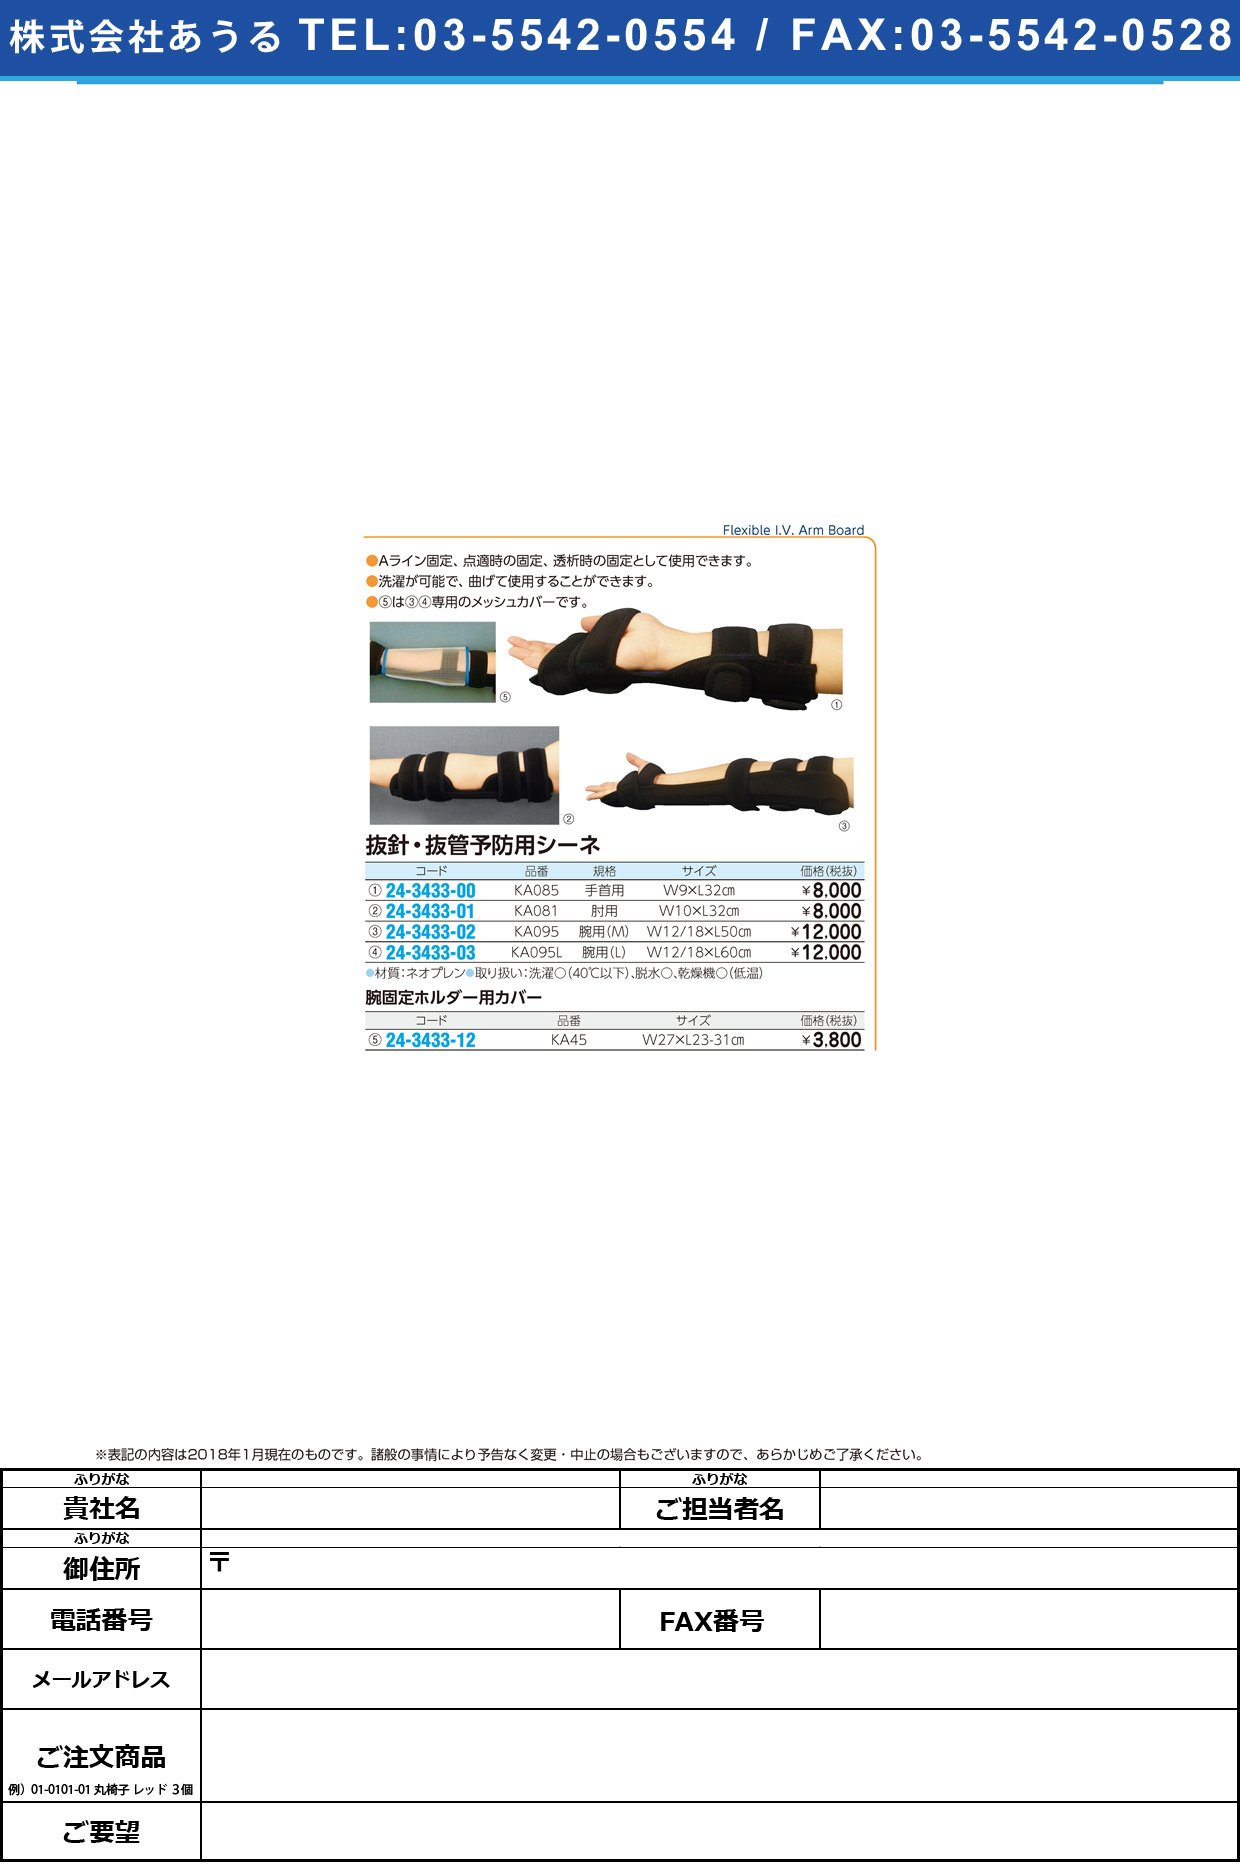 (24-3433-12)腕固定ホルダー用カバー KA45 ｳﾃﾞｺﾃｲﾎﾙﾀﾞｰﾖｳｶﾊﾞｰ【1袋単位】【2018年カタログ商品】